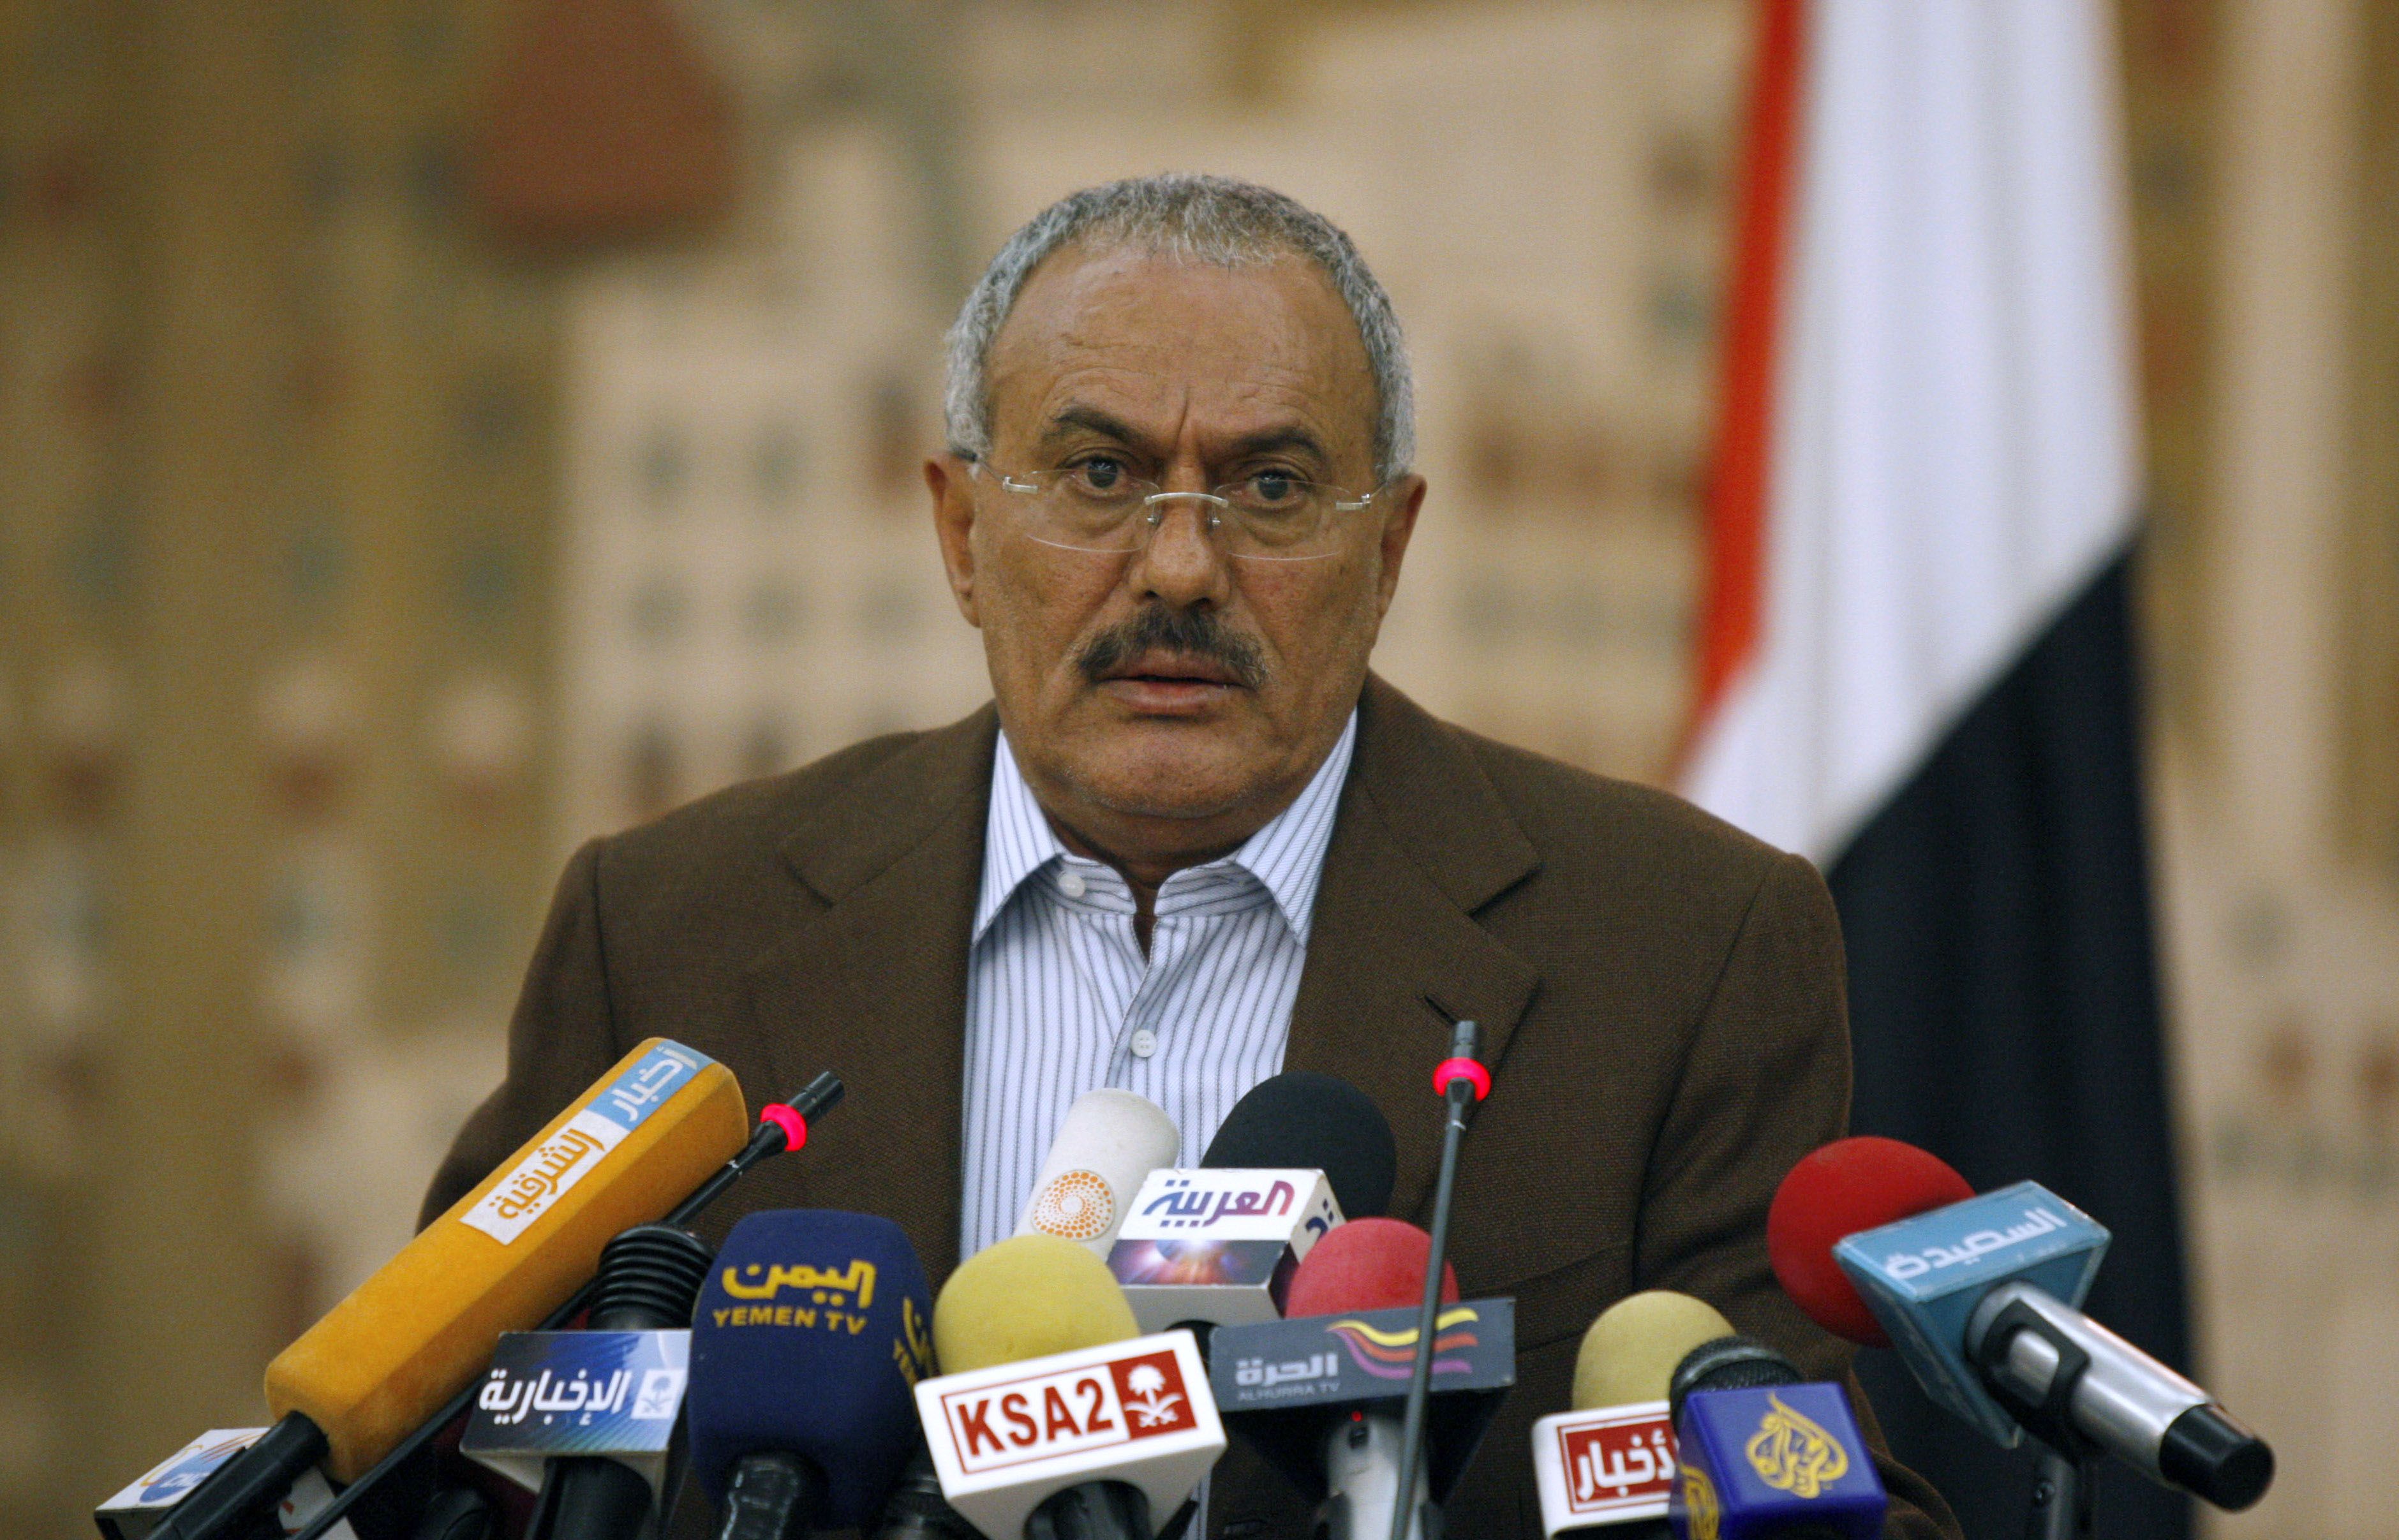 Demonstration, Uppror, Avgår, Ali Abdullah Saleh, President, Revolution, USA, Jemen